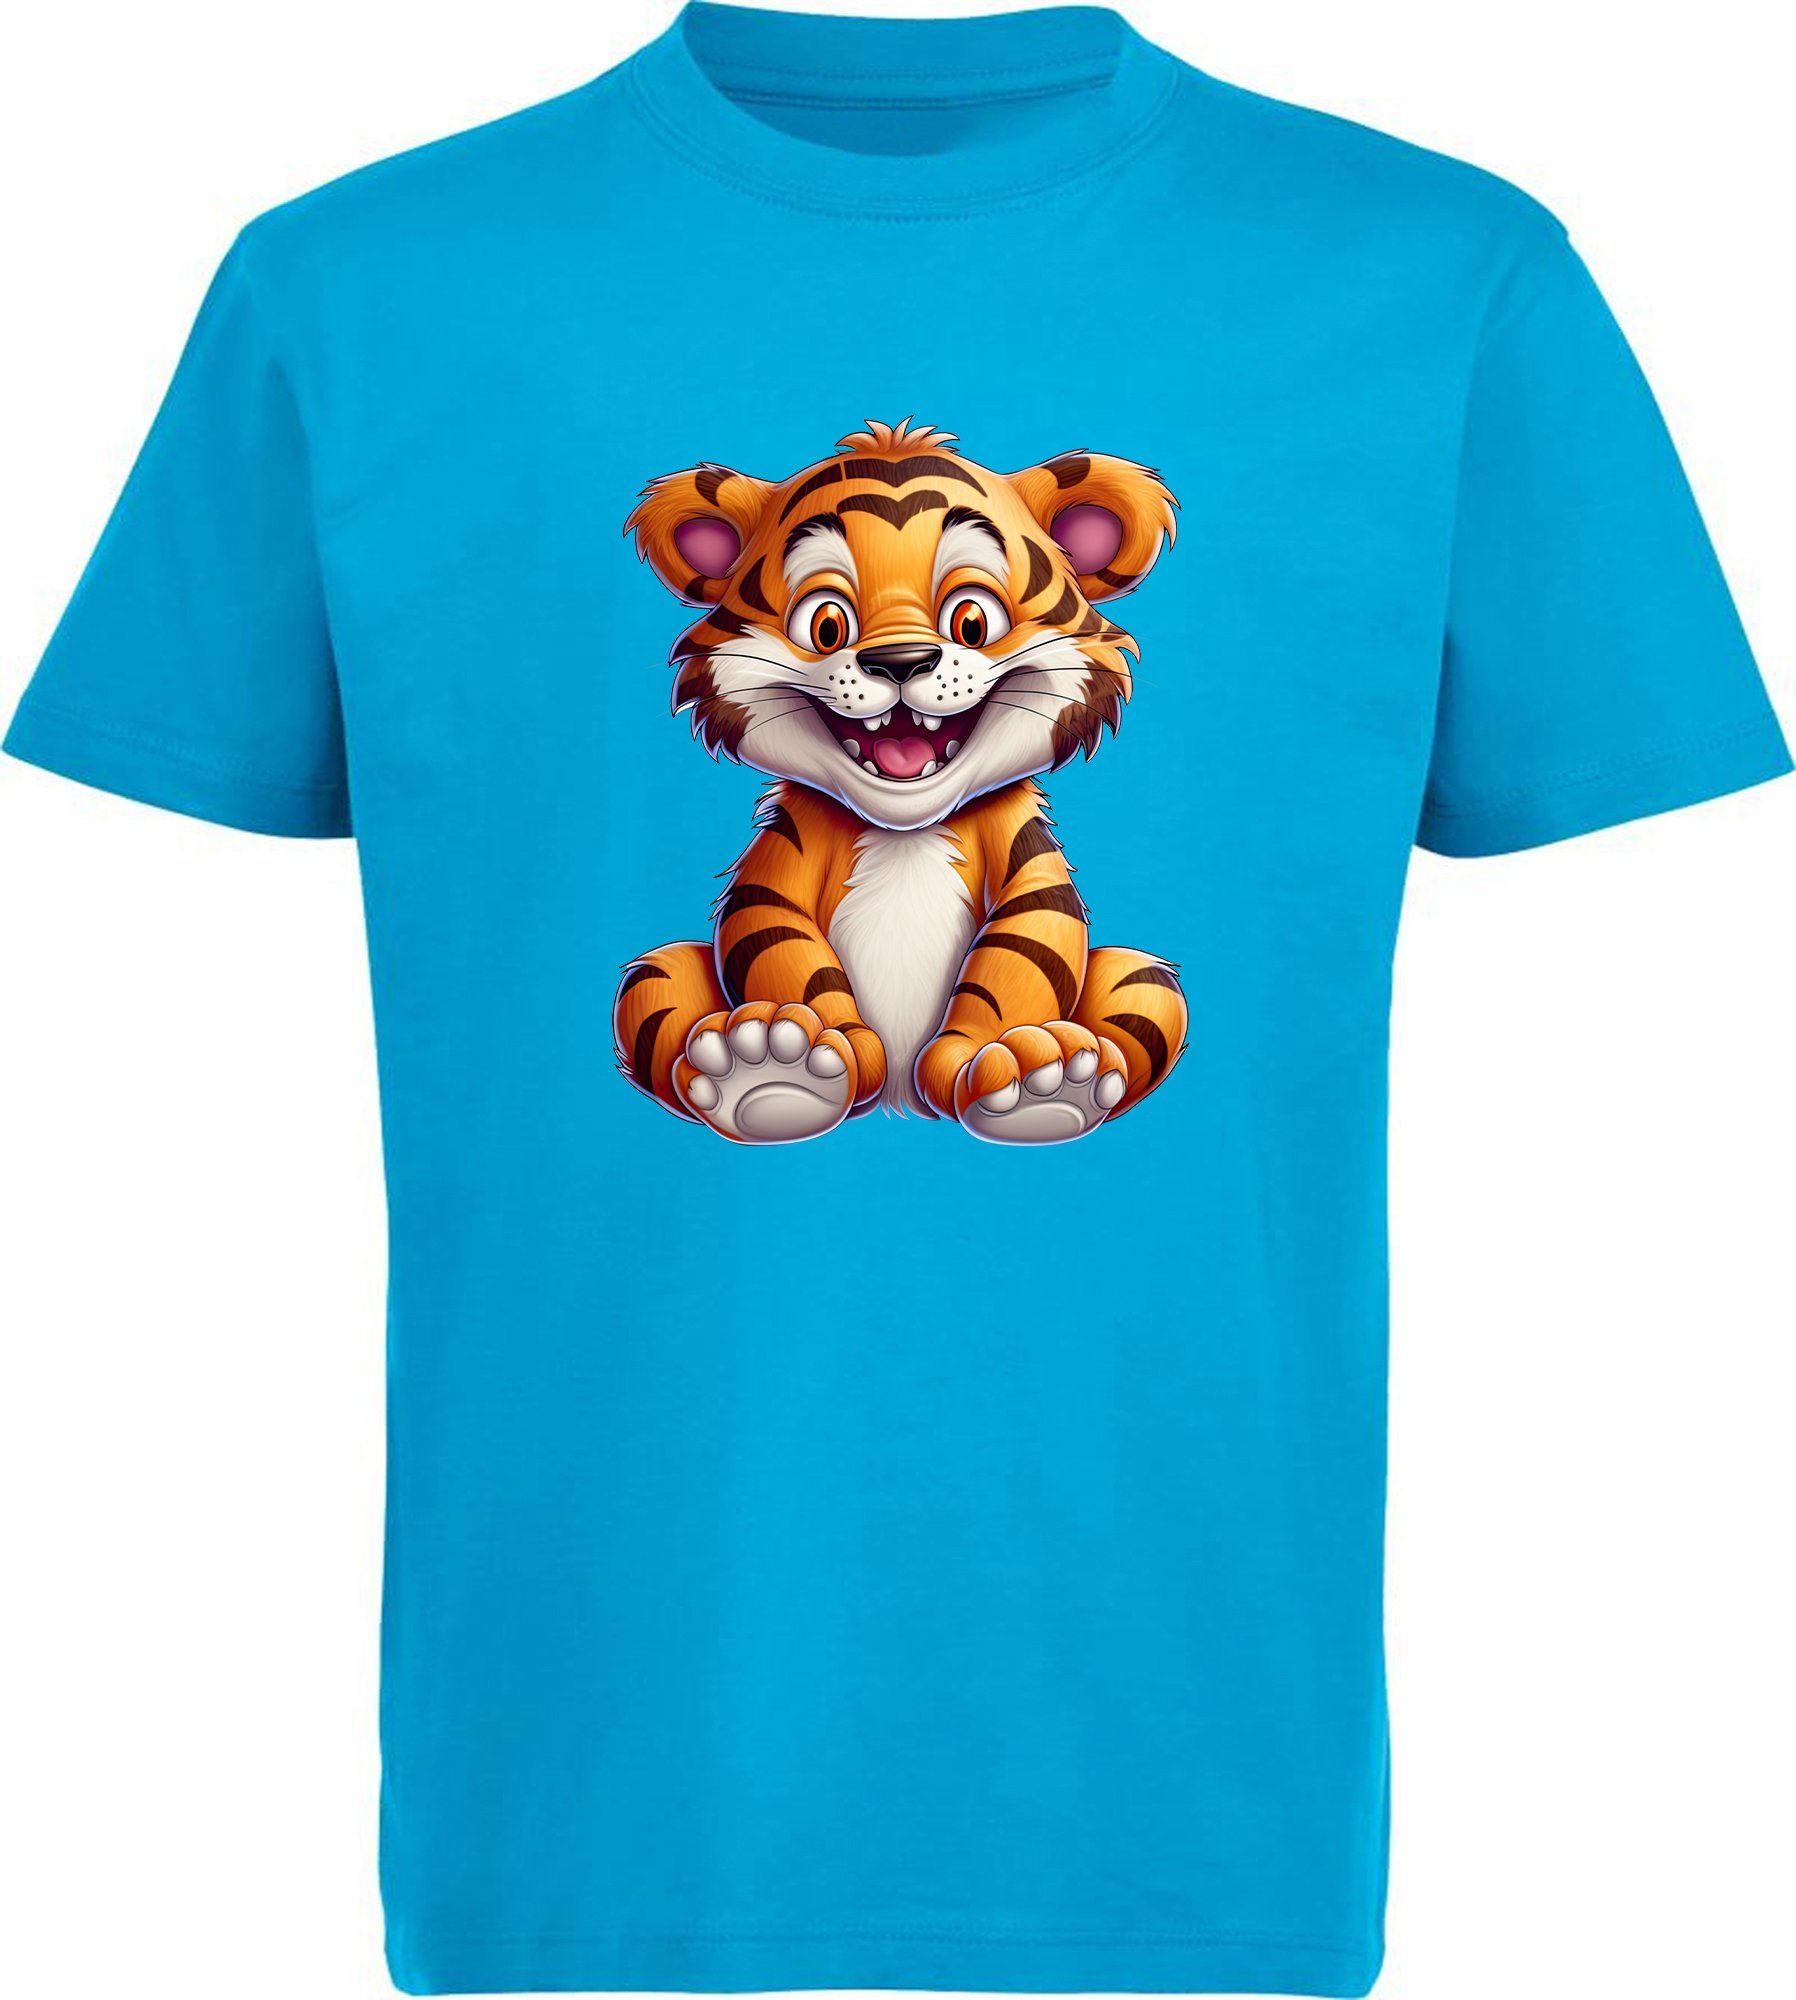 MyDesign24 T-Shirt Kinder Wildtier Print Aufdruck, - bedruckt Baumwollshirt Baby blau mit i278 Tiger Shirt aqua